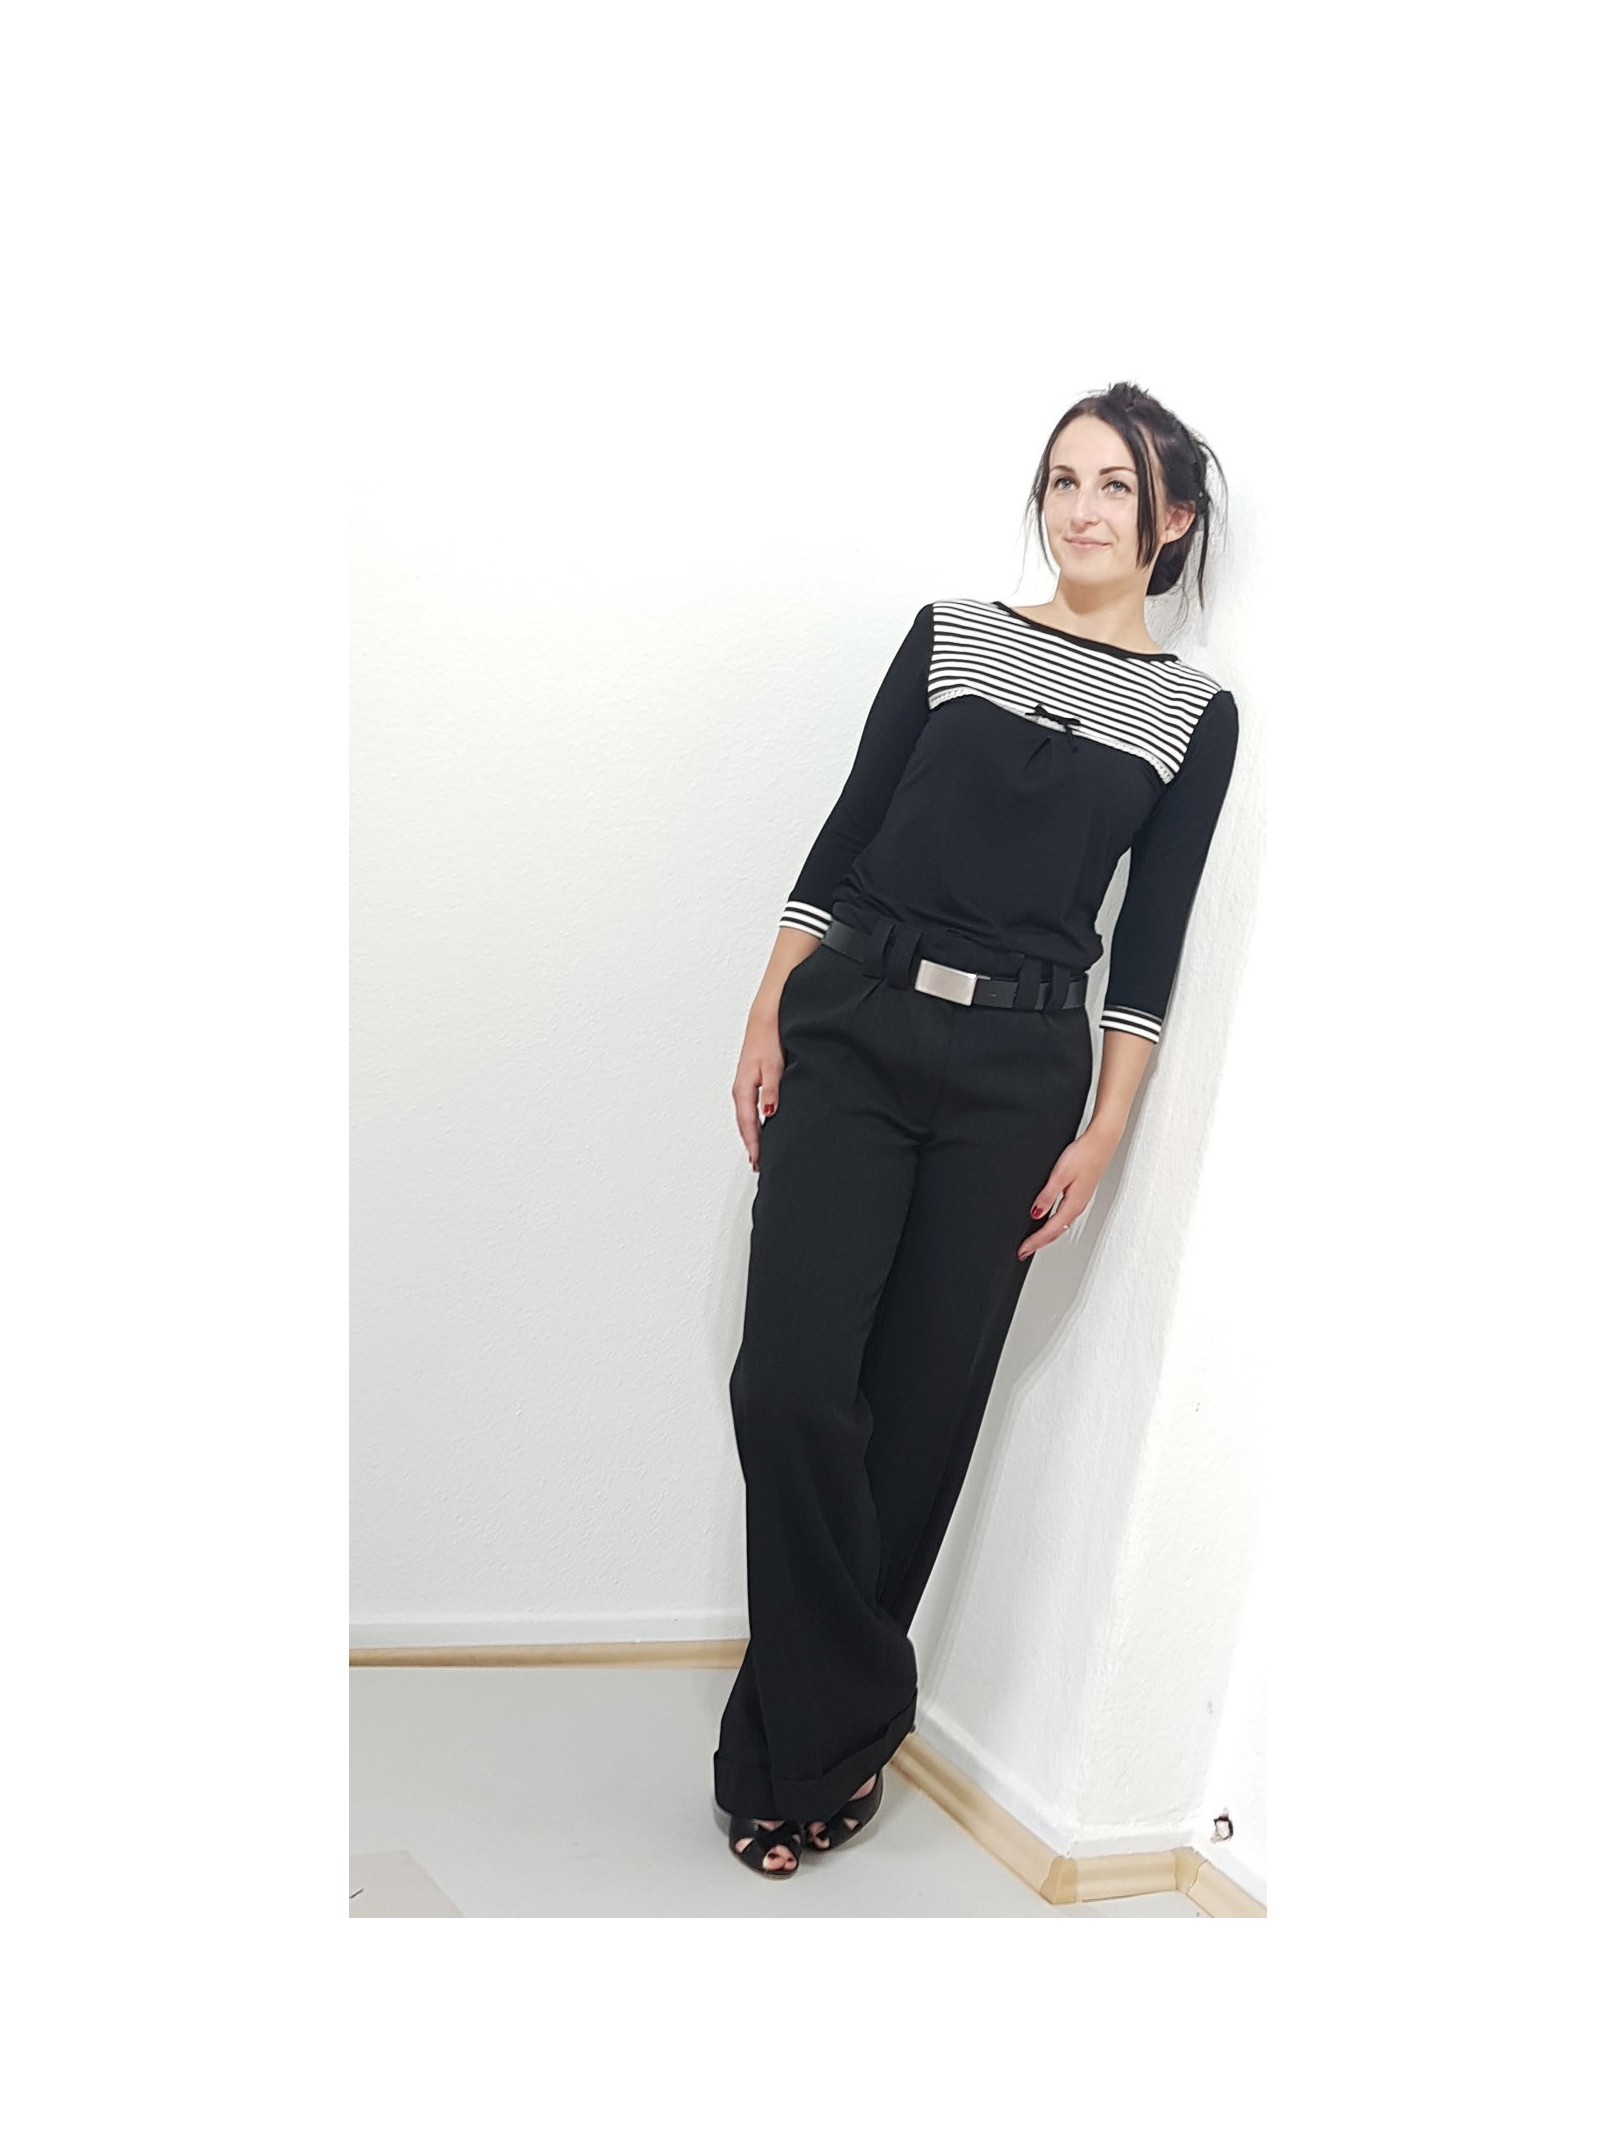 Elegante Damen Bluse in Schwarz, Streifen, Schleife, Designer Mode.